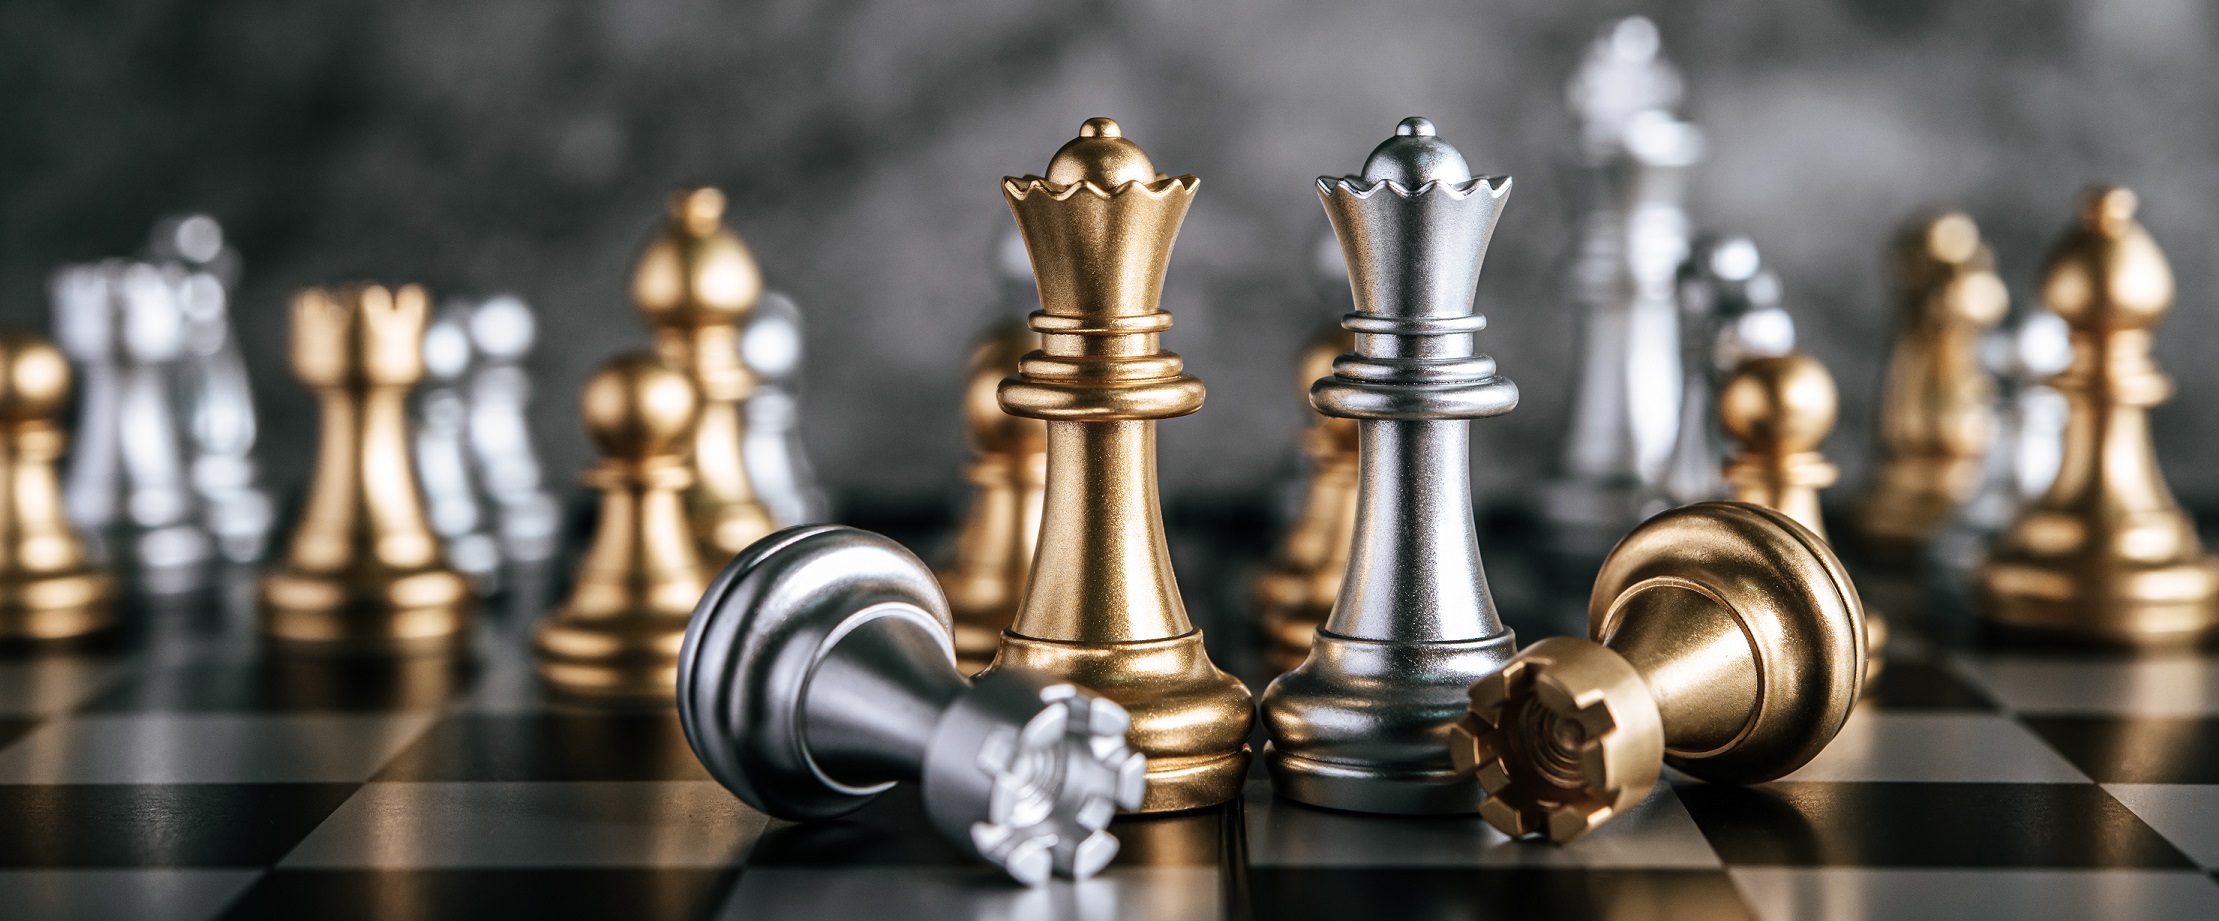 Področno šahovsko posamično in ekipno tekmovanje